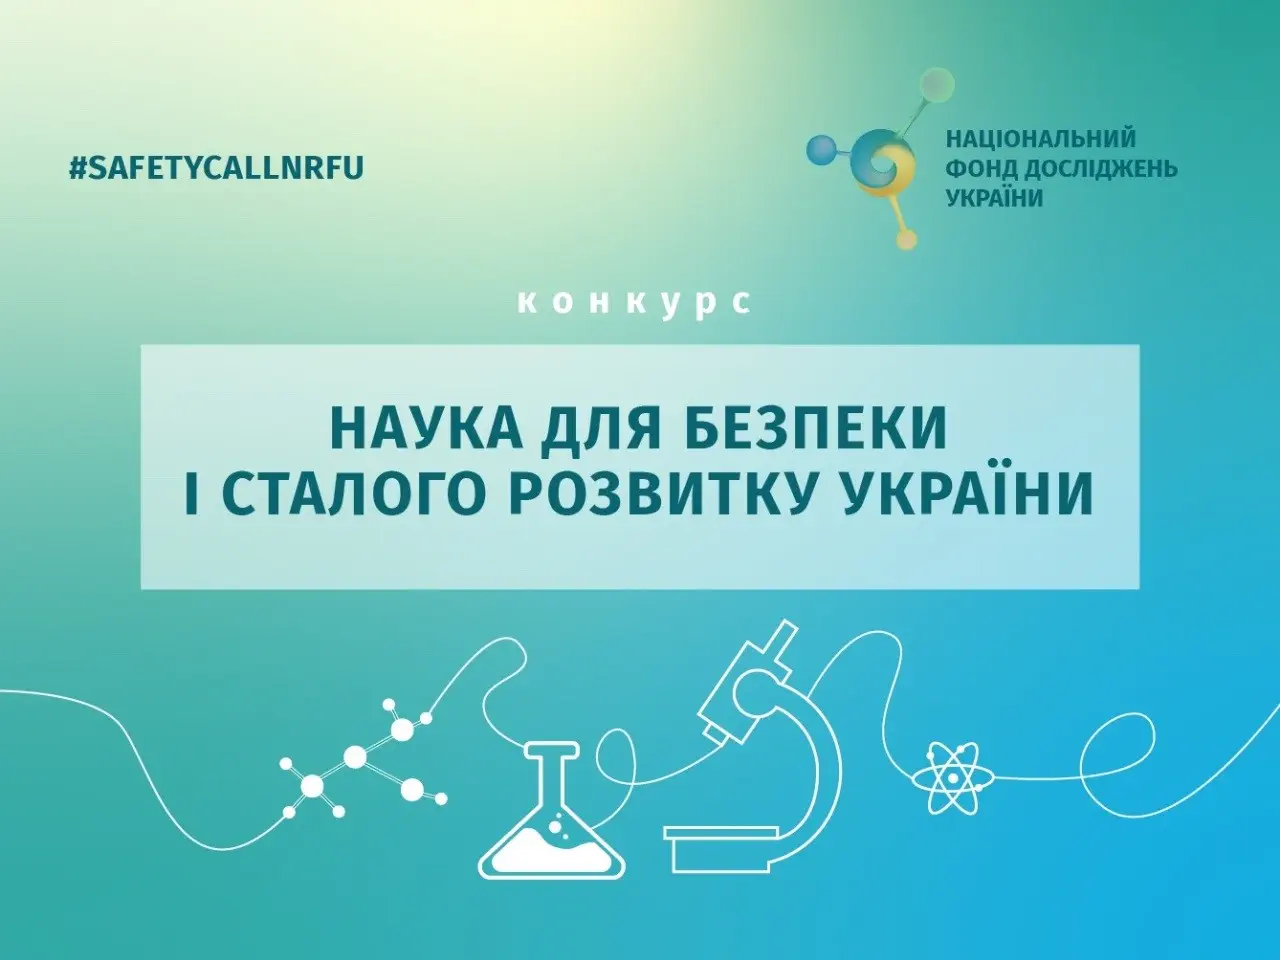 Оголошено конкурс наукових проєктів та розробок від Національного фонду наукових досліджень України